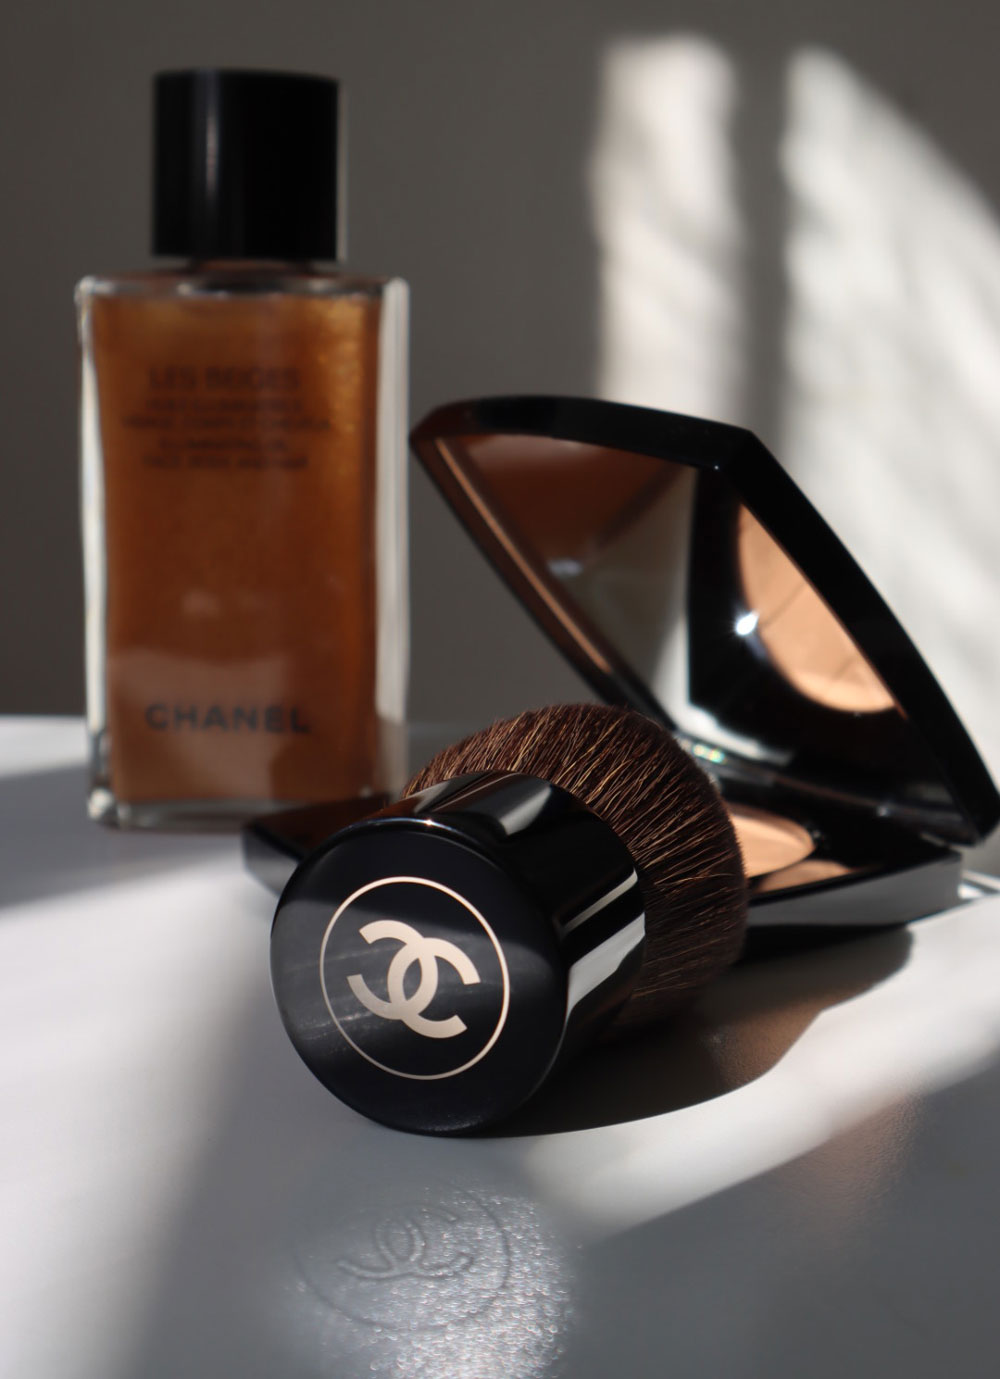 Chanel setzt bei Les Beiges im Jahre 2022 auf Oversized Produkte für den perfekten Glow. 